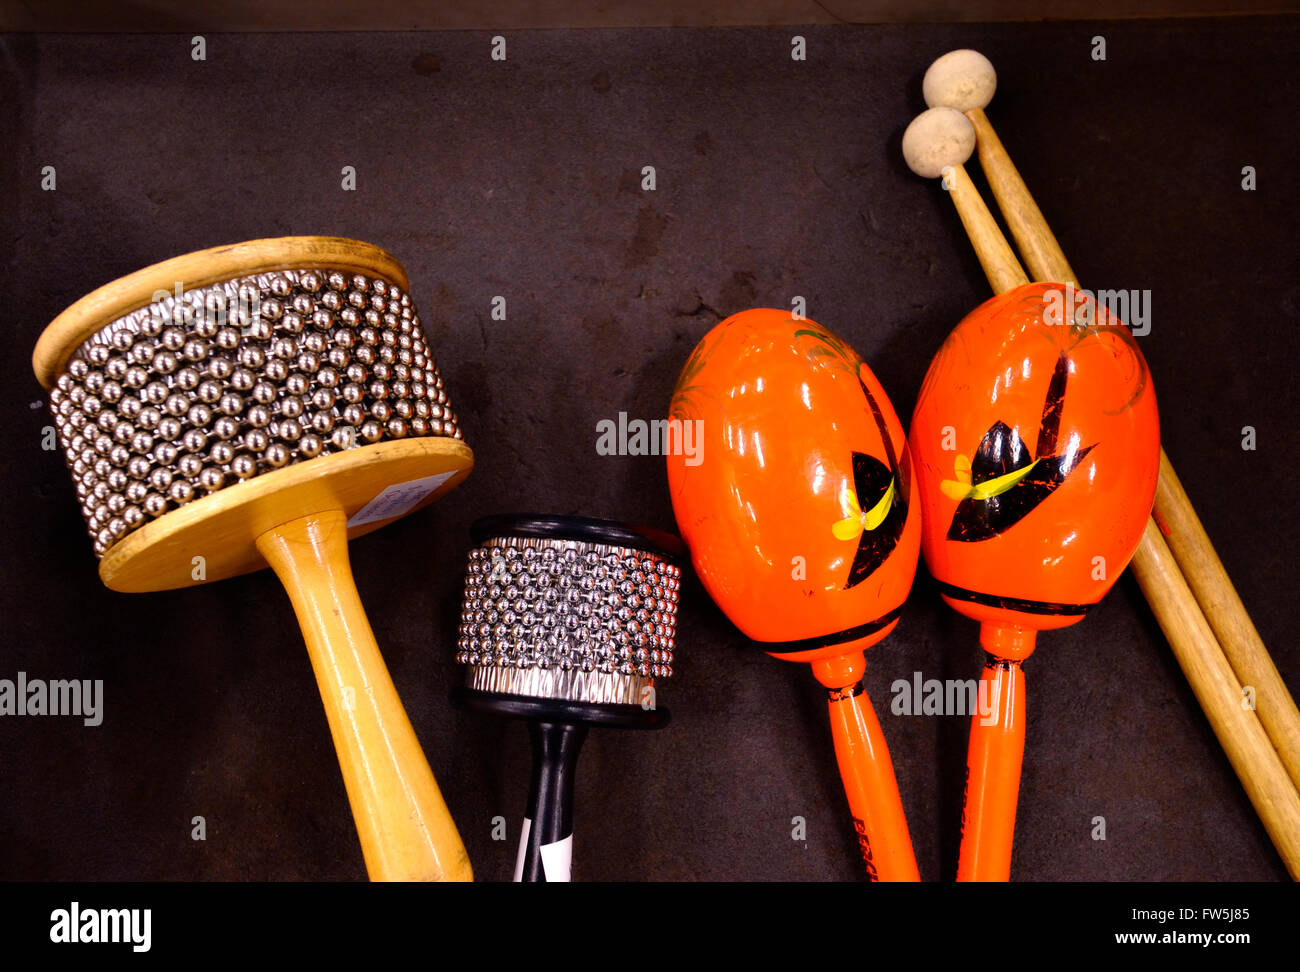 Cabasas orchestrale et les maracas. La Cabasa, provenant d'un instrument  appelé afuche, est un pays d'Amérique Latine / instrument à percussion  cubaine construit avec des boucles de chaîne boule en acier enroulé